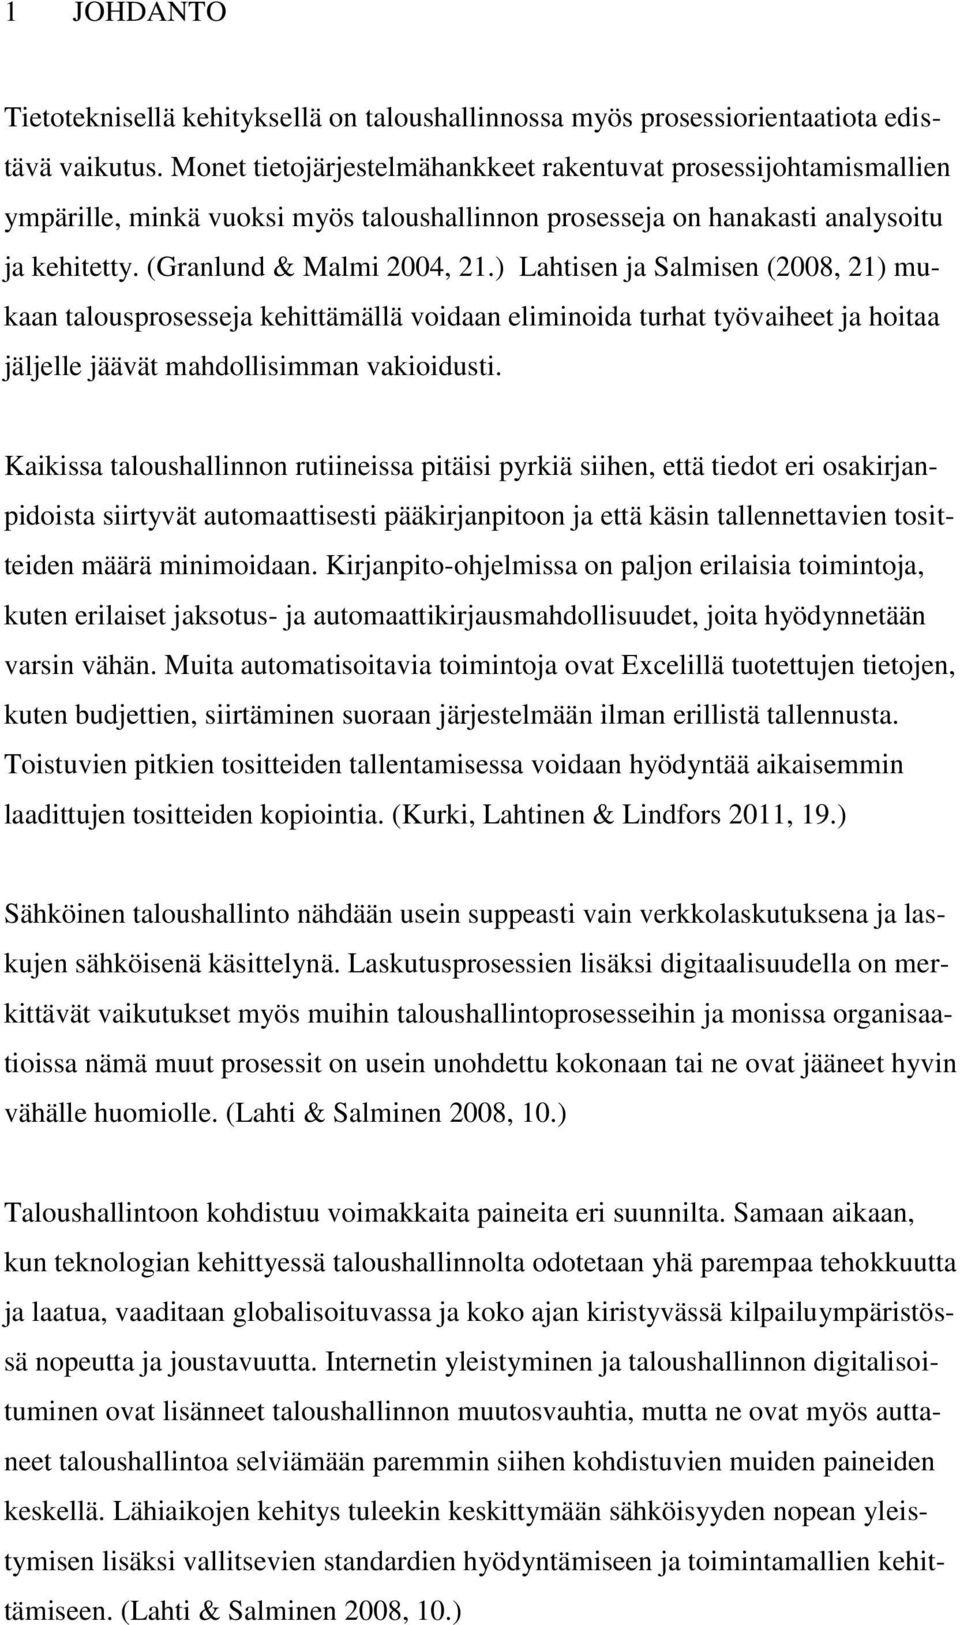 ) Lahtisen ja Salmisen (2008, 21) mukaan talousprosesseja kehittämällä voidaan eliminoida turhat työvaiheet ja hoitaa jäljelle jäävät mahdollisimman vakioidusti.